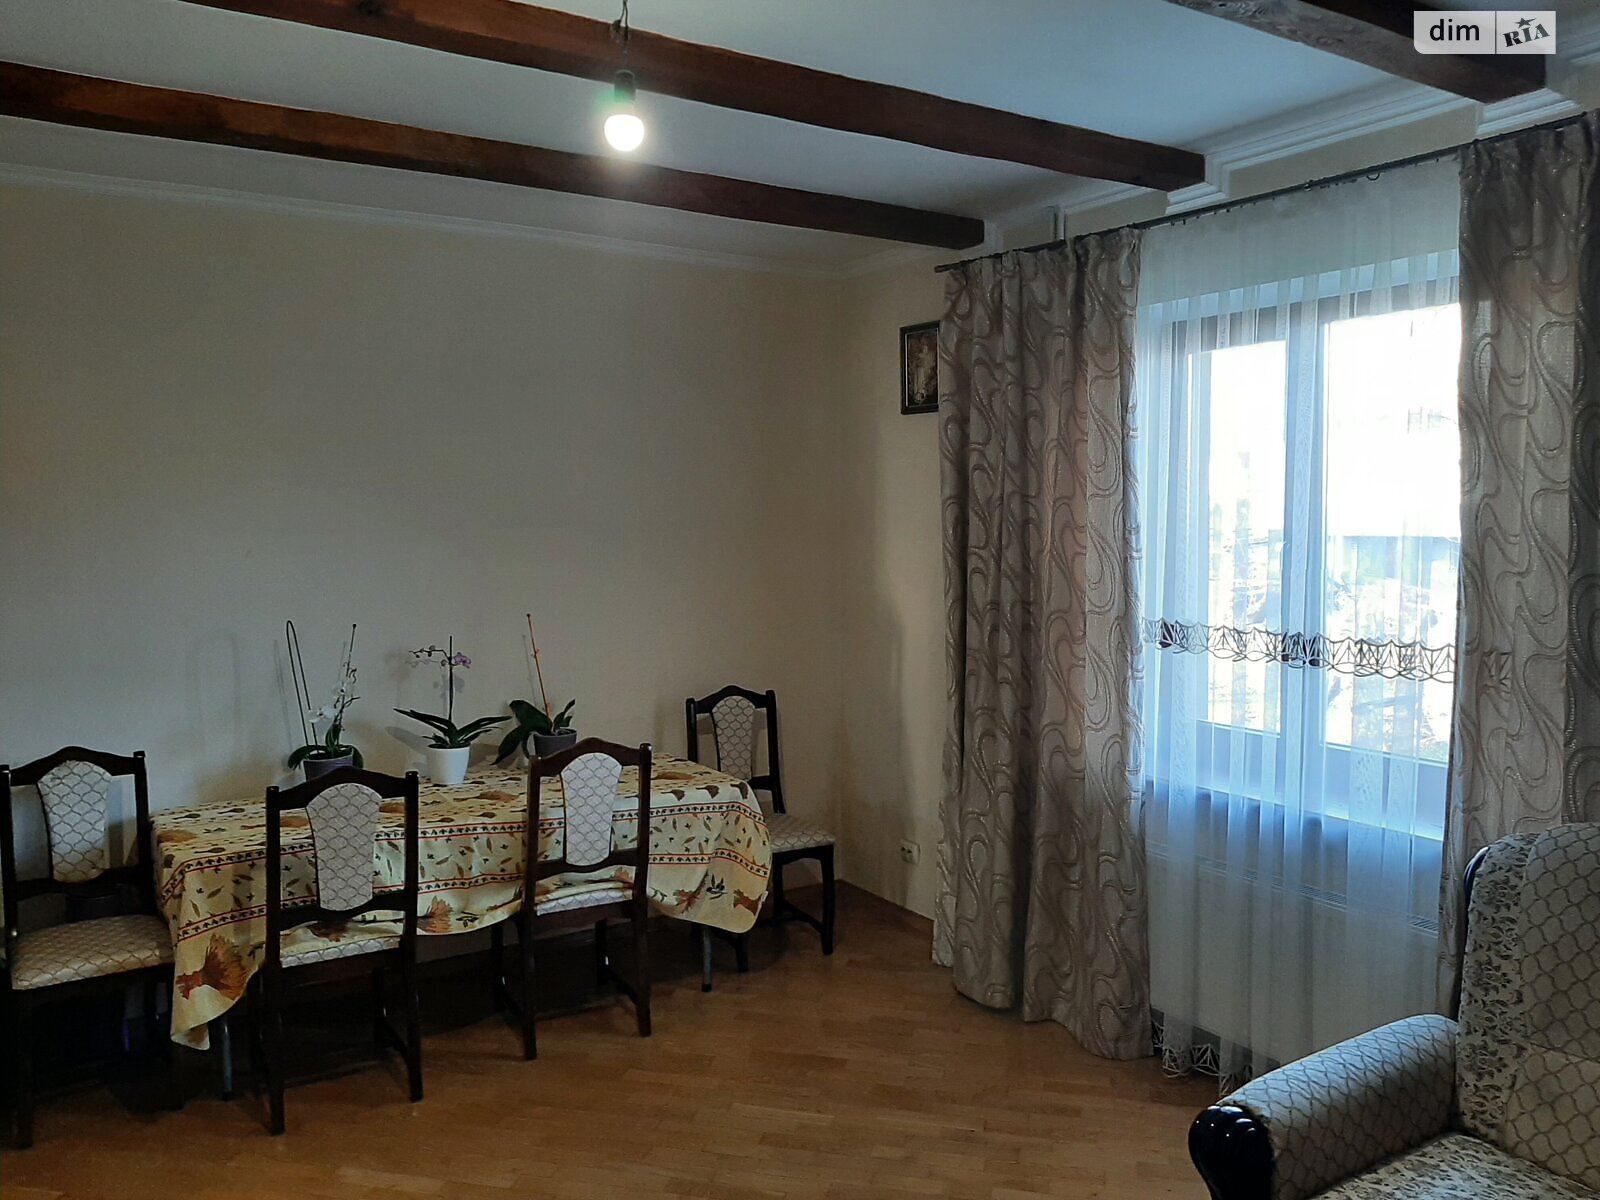 Продажа части дома в Басовке, улица Зеленая, 5 комнат фото 1